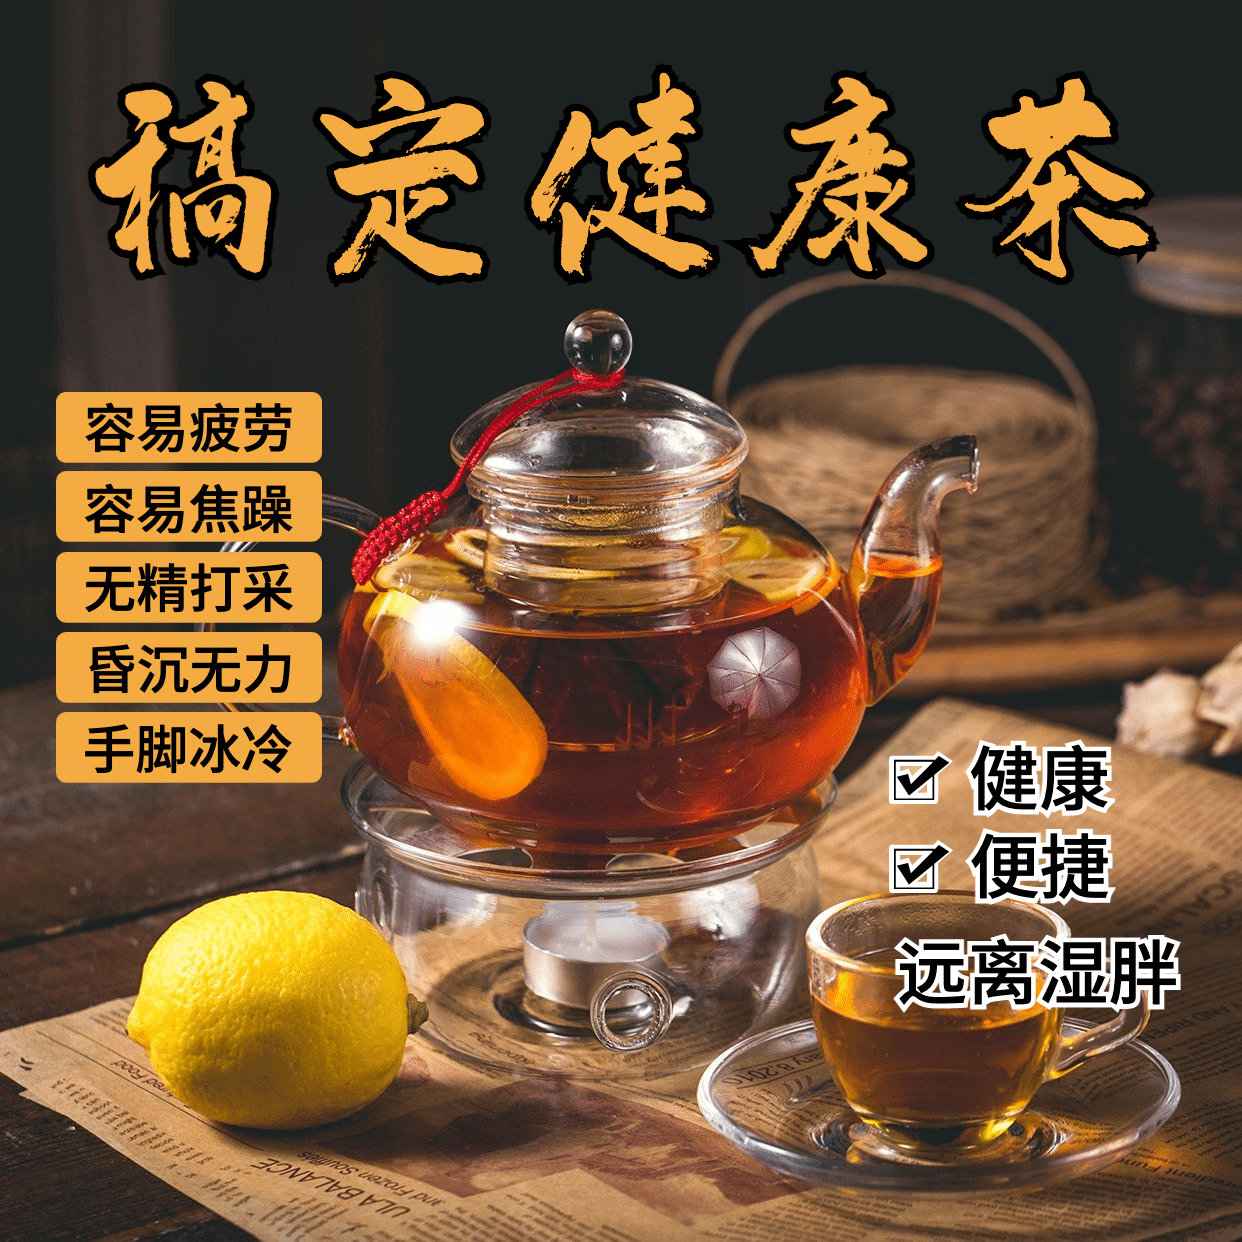 养生保健产品展示祛湿茶